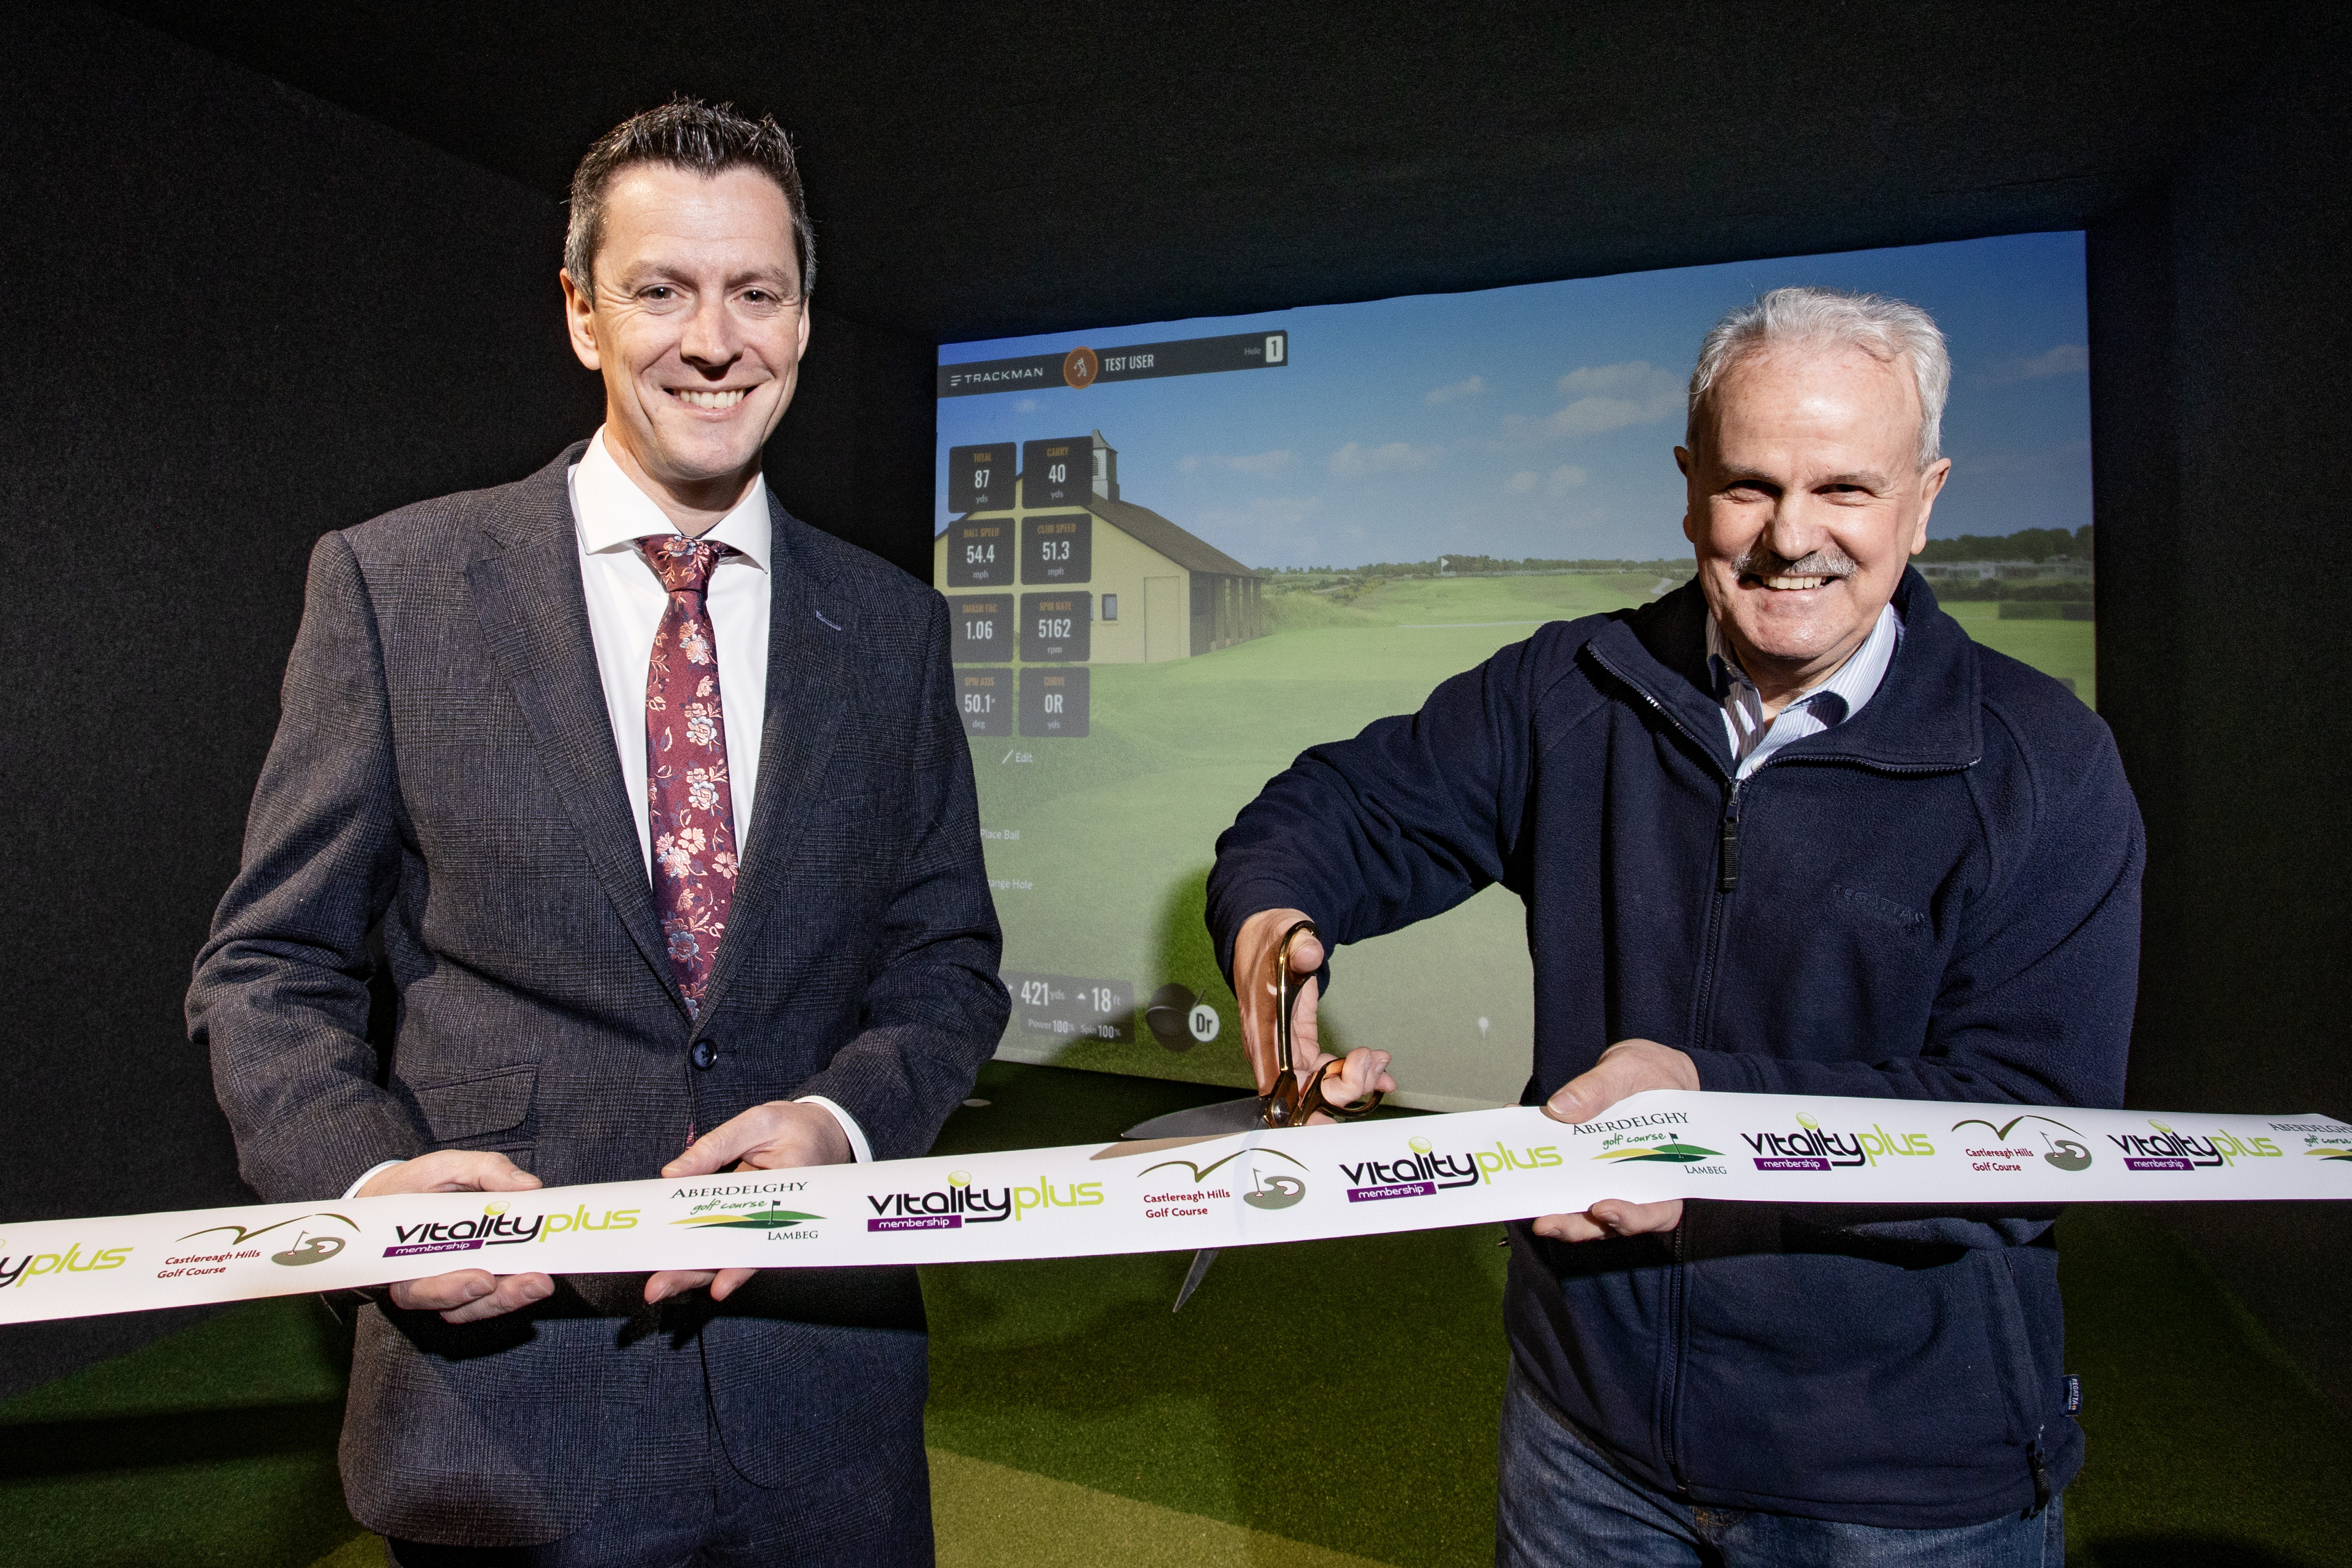 Launch of New Indoor Golf Studio